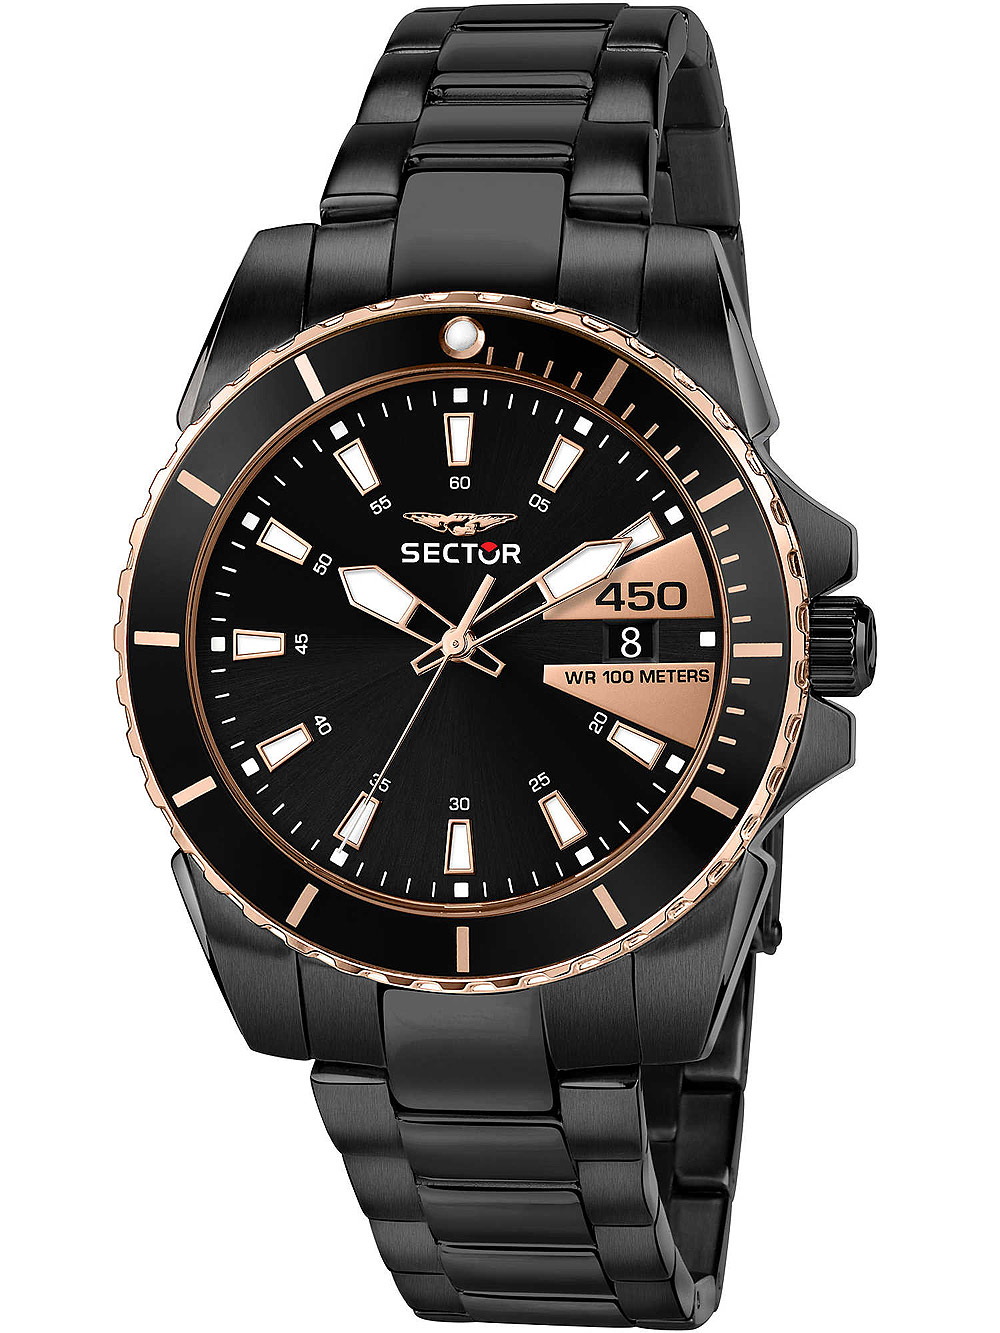 Pánské hodinky Sector R3253276006 Serie 450